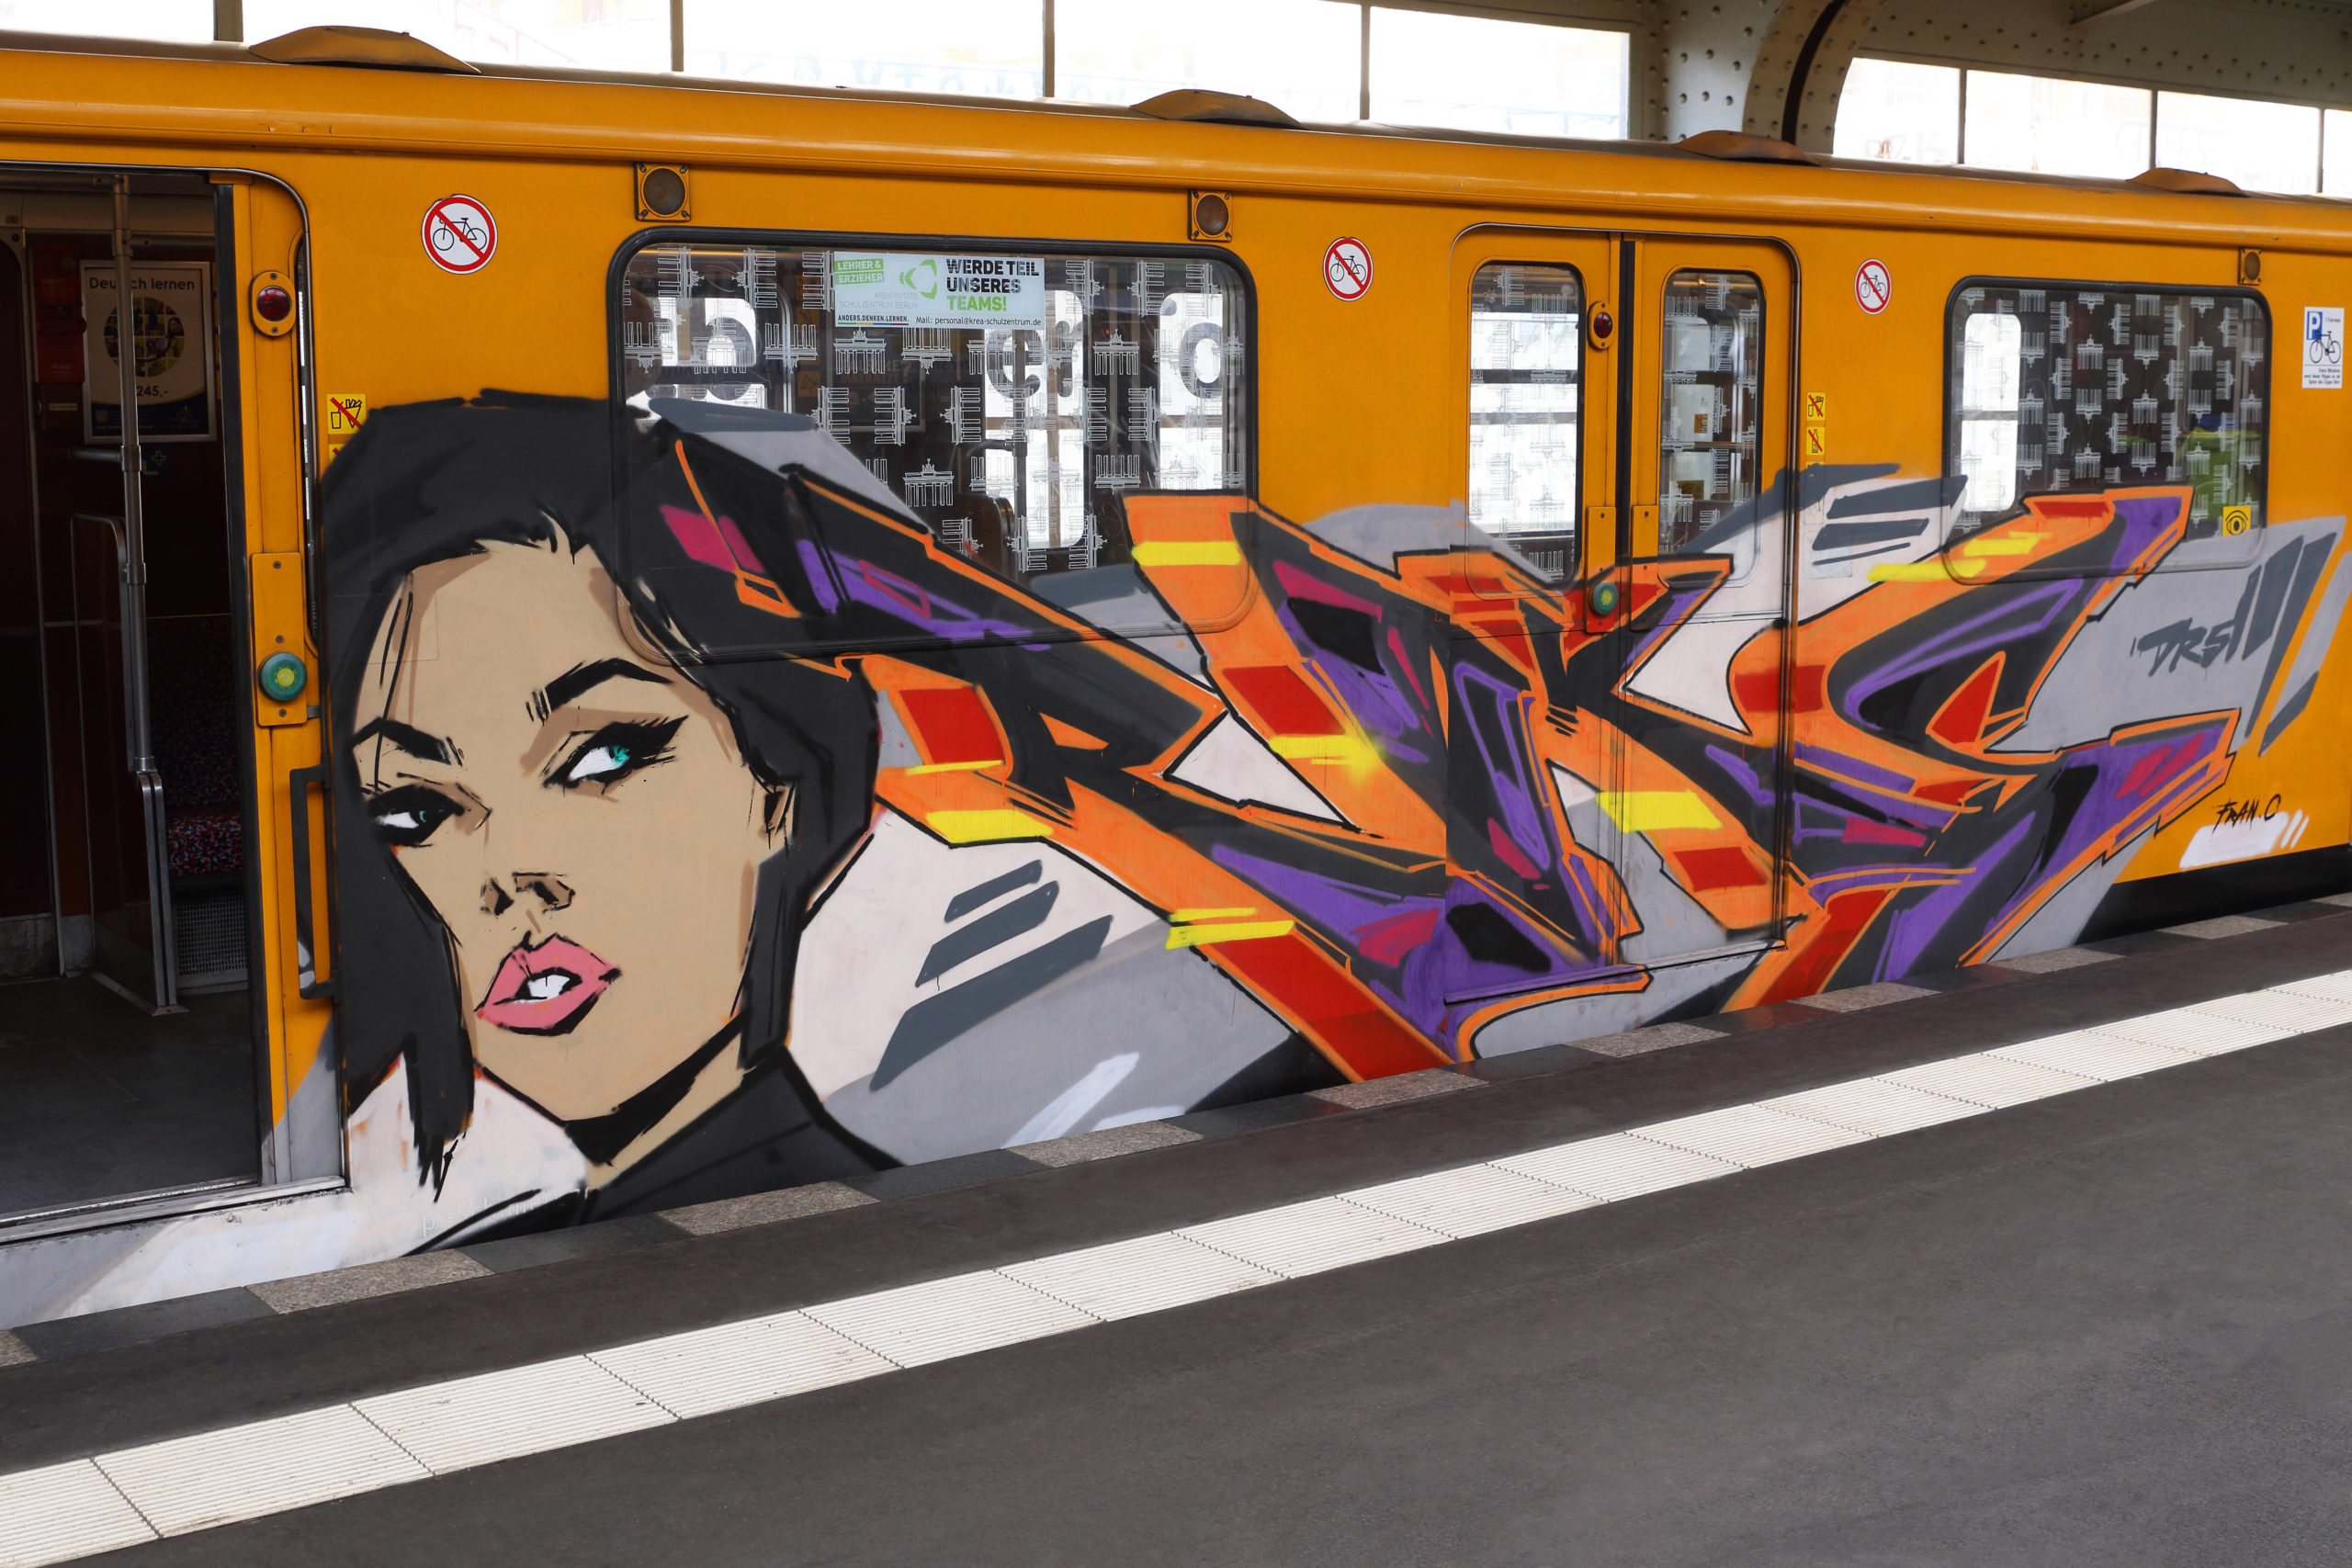 Graffiti Berlin Train-Writing an einer Berliner U-Bahn: "Wenn jemand viele Züge bemalt, dann ist das auch eine Art von Kunst, eine Art von Performance." 